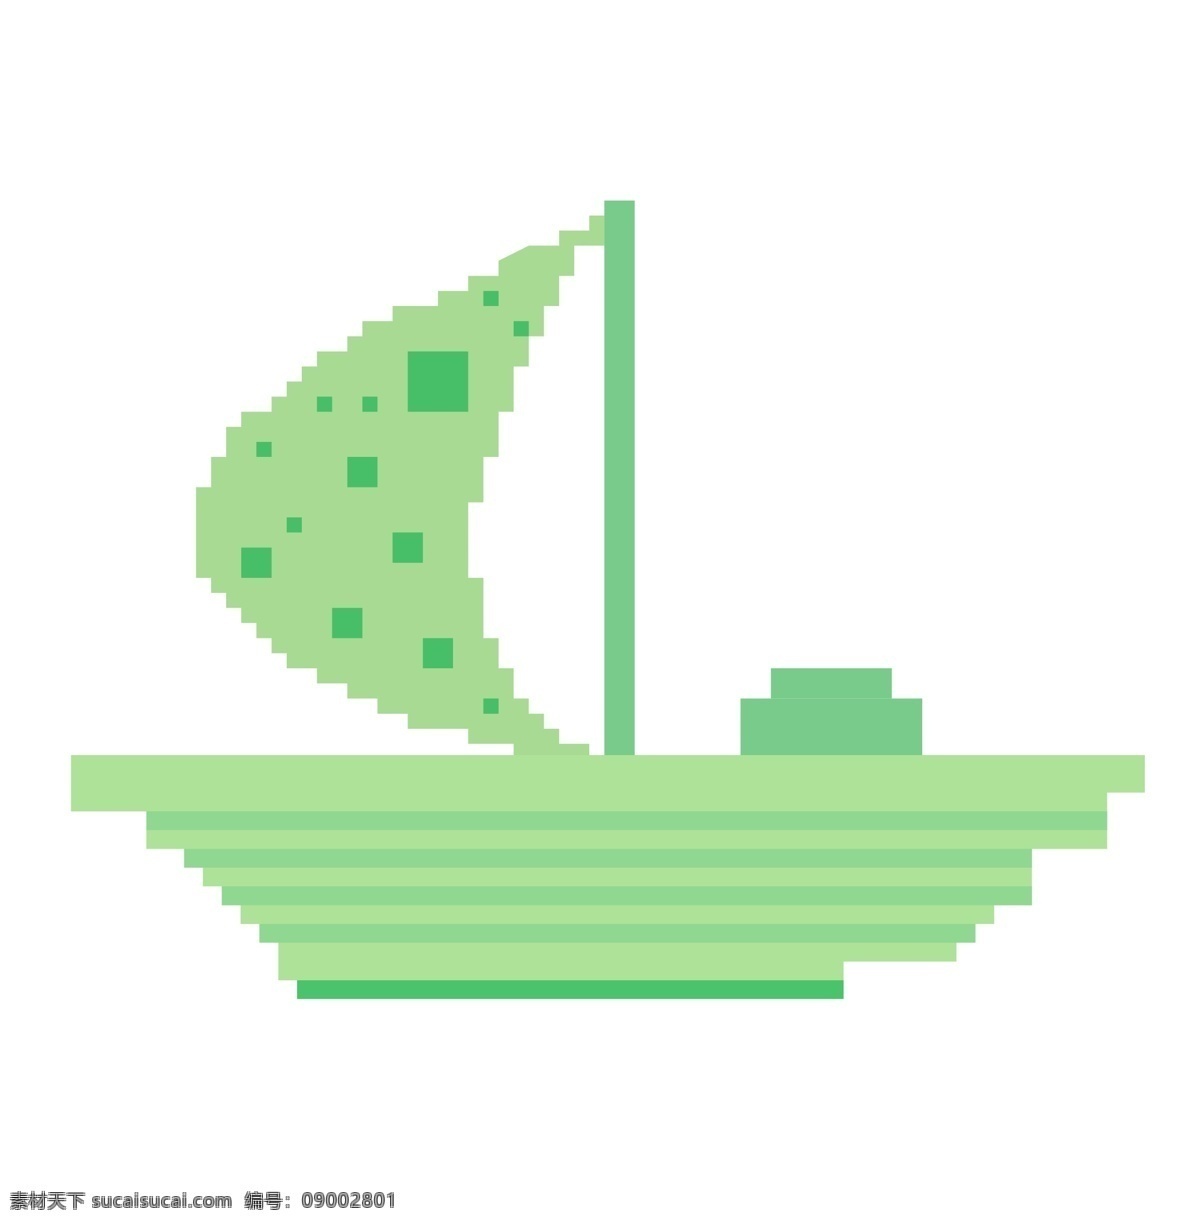 像素 绿色 小船 插画 绿色的小船 卡通插画 像素插画 像素小物 像素物品 模糊像素 像素的小船